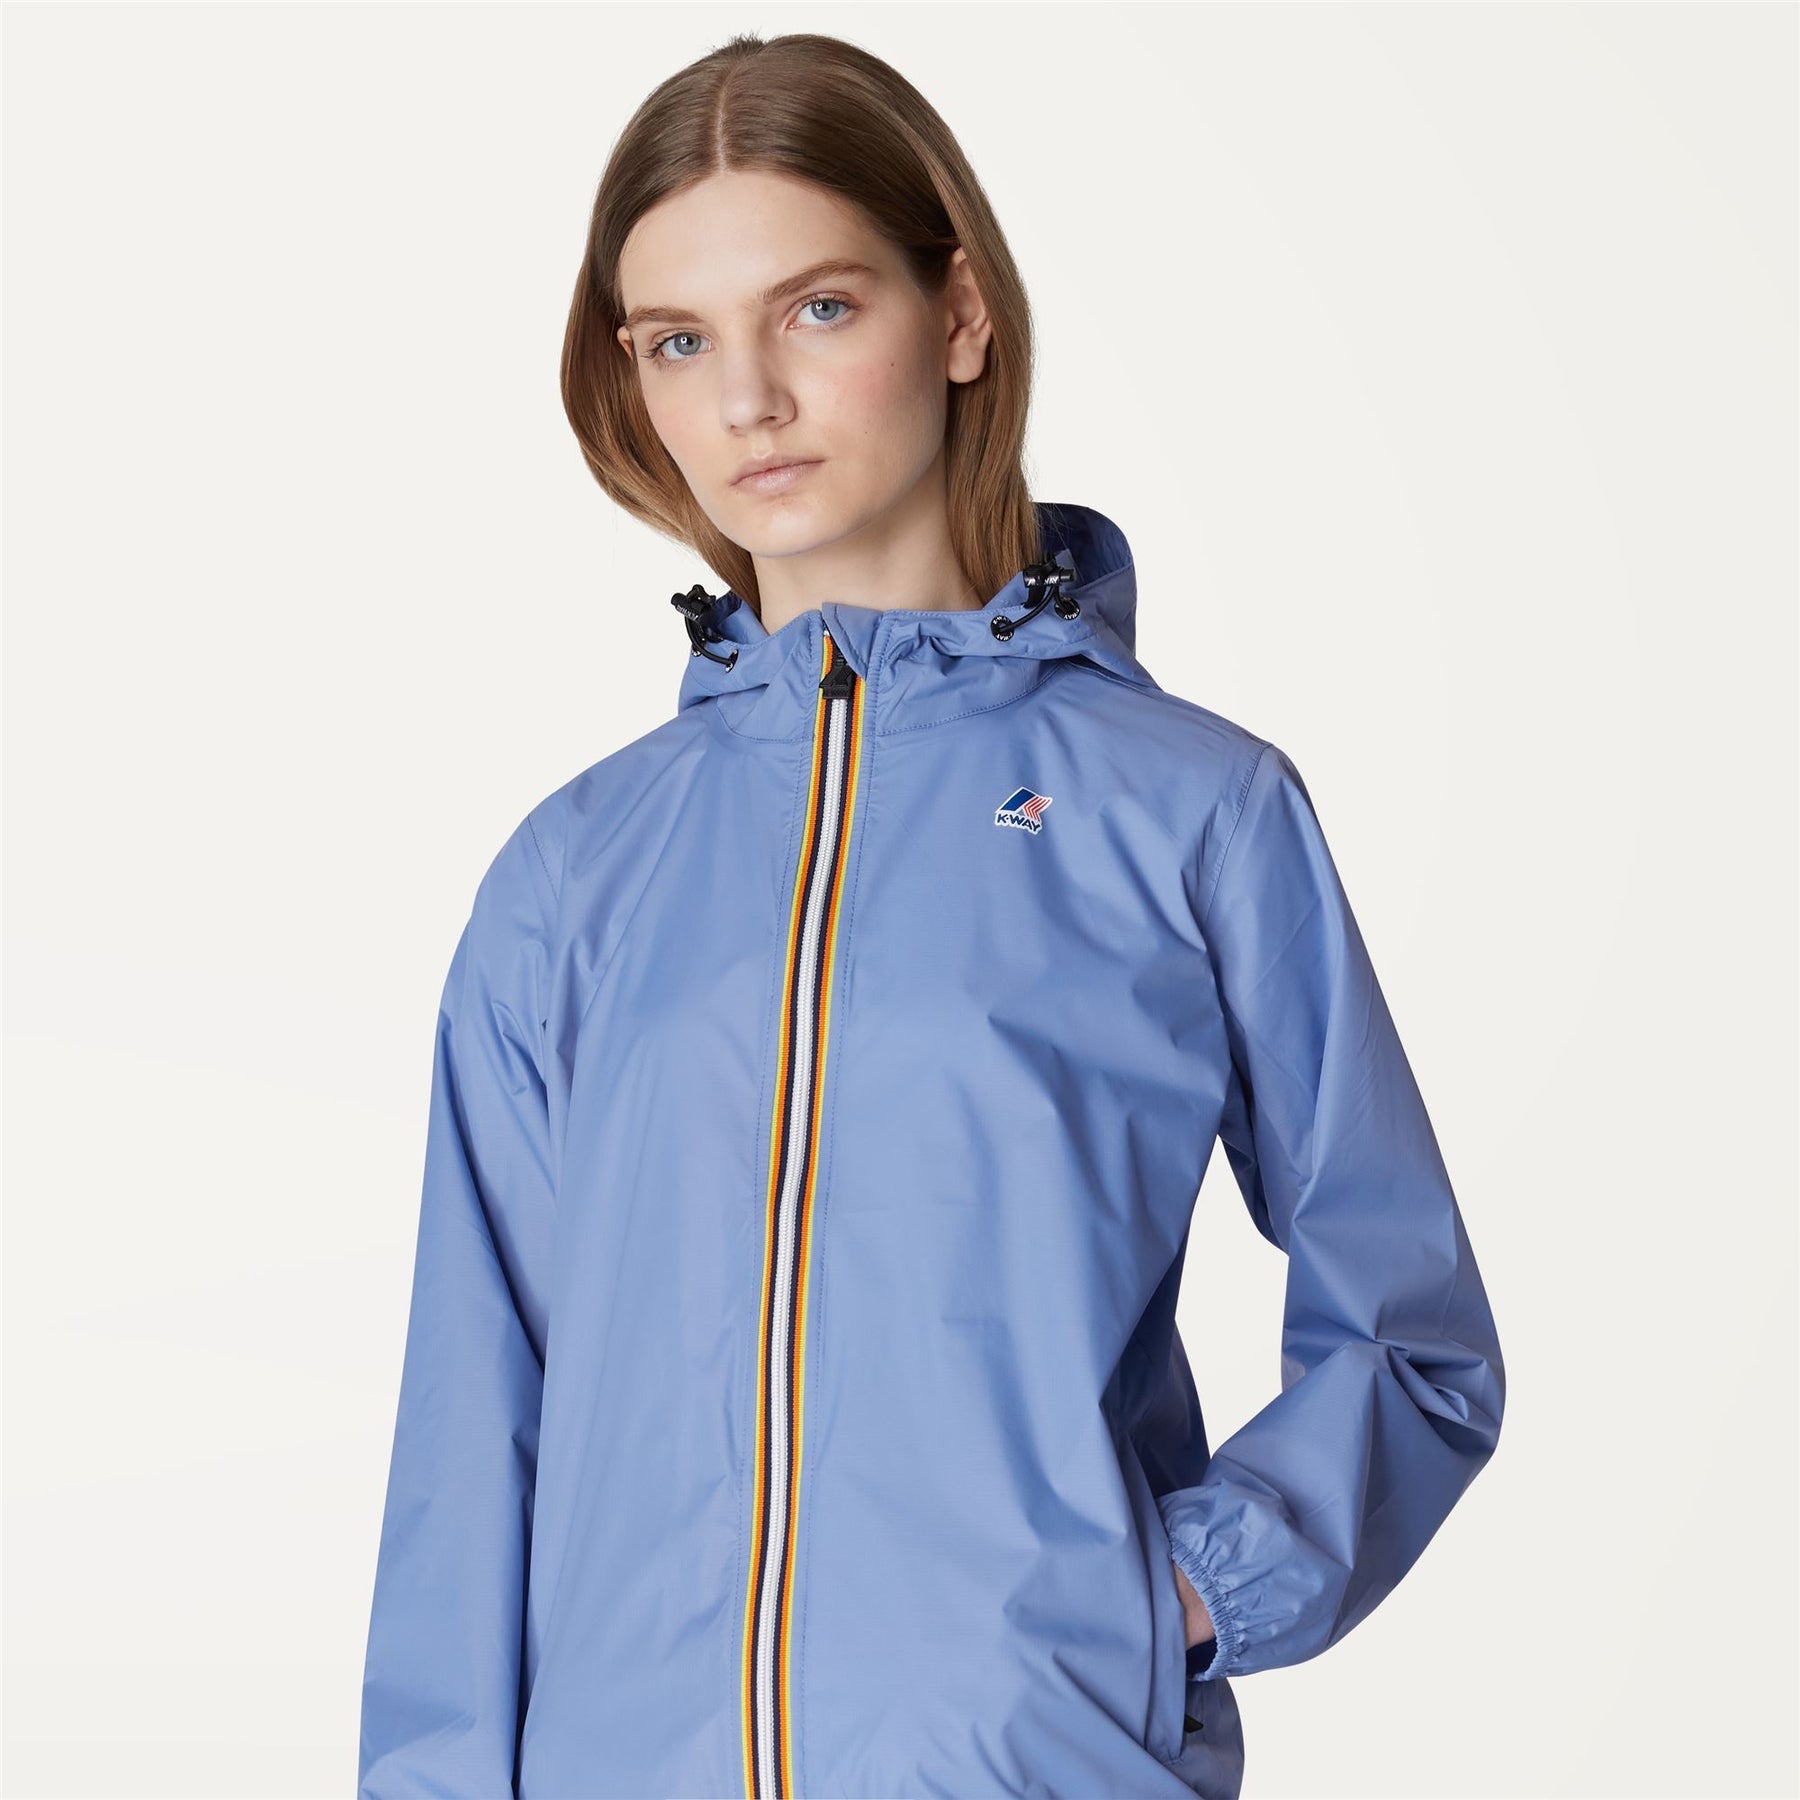 Claude - Unisex Packable Full Zip Waterproof  Rain Jacket in Azure Dark